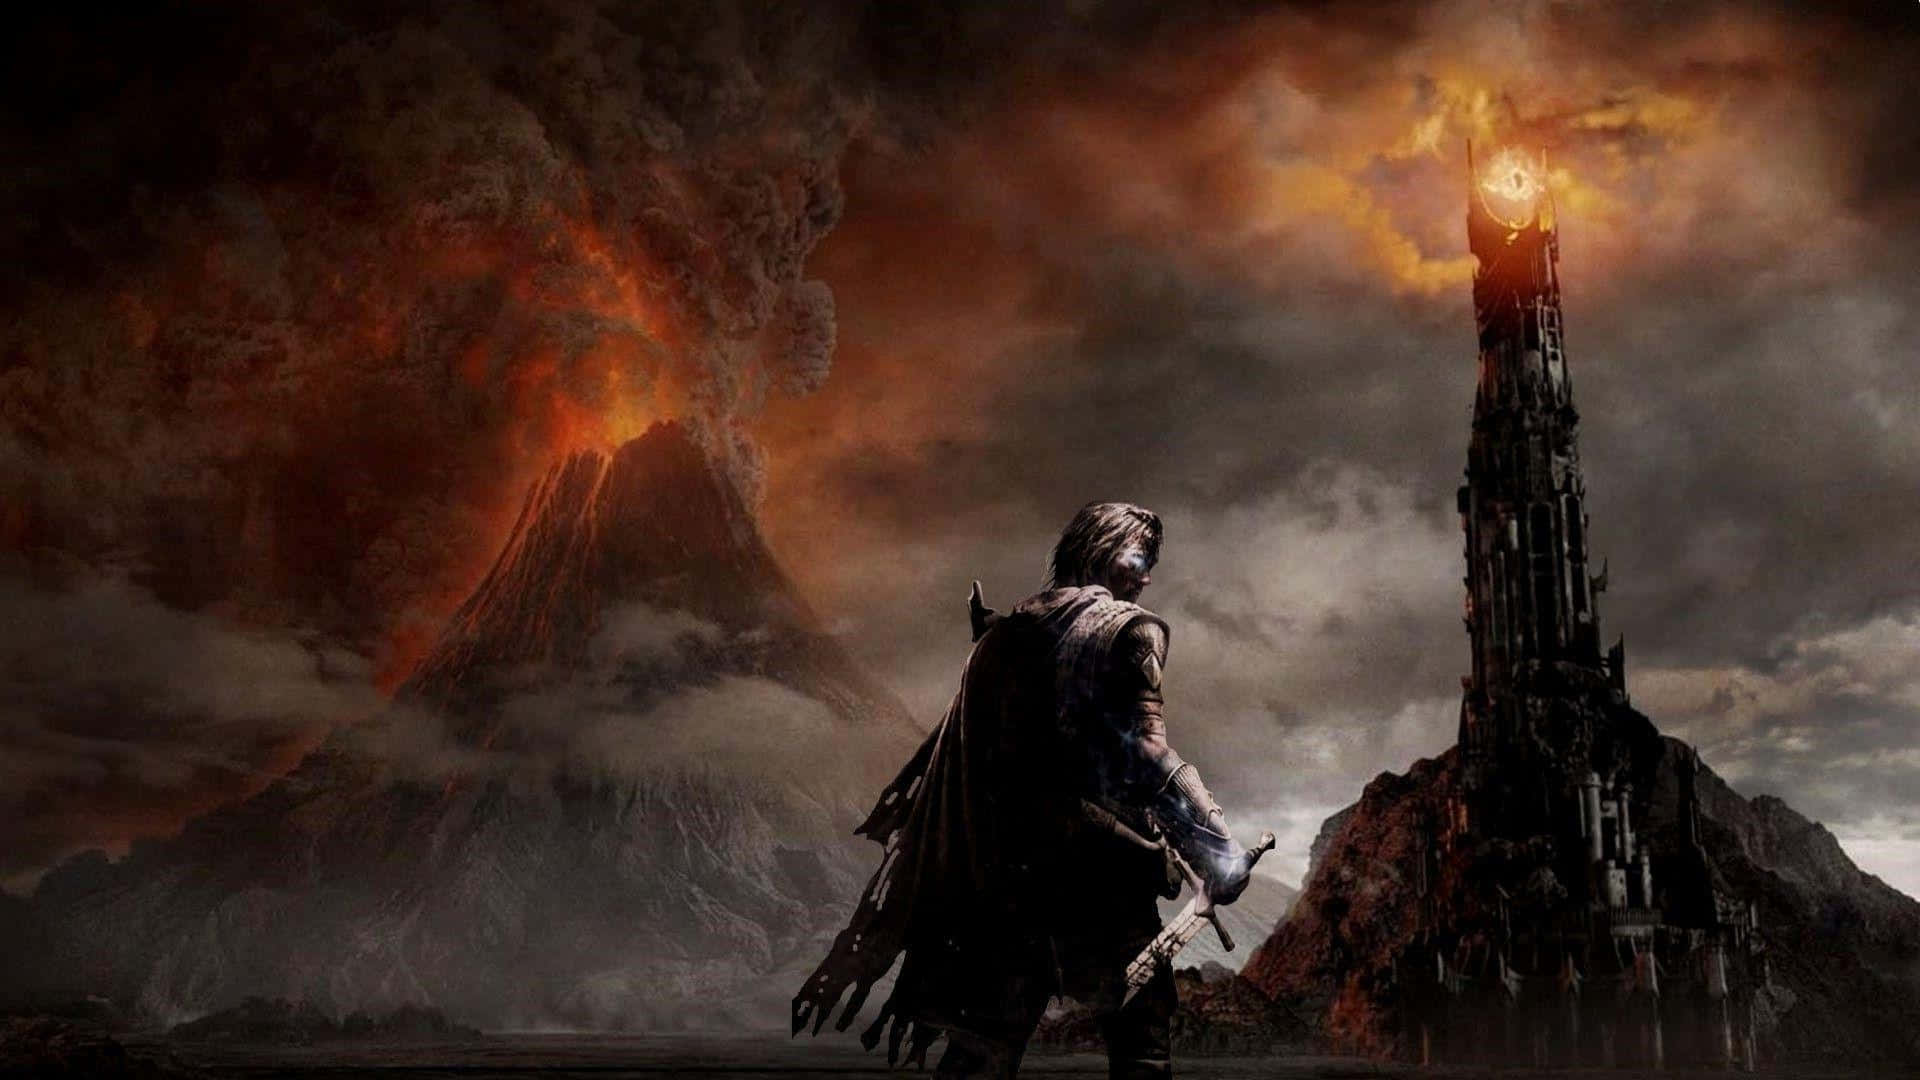 Sauronbefehligt Eine Armee Von Orks In Schatten Des Krieges. Wallpaper